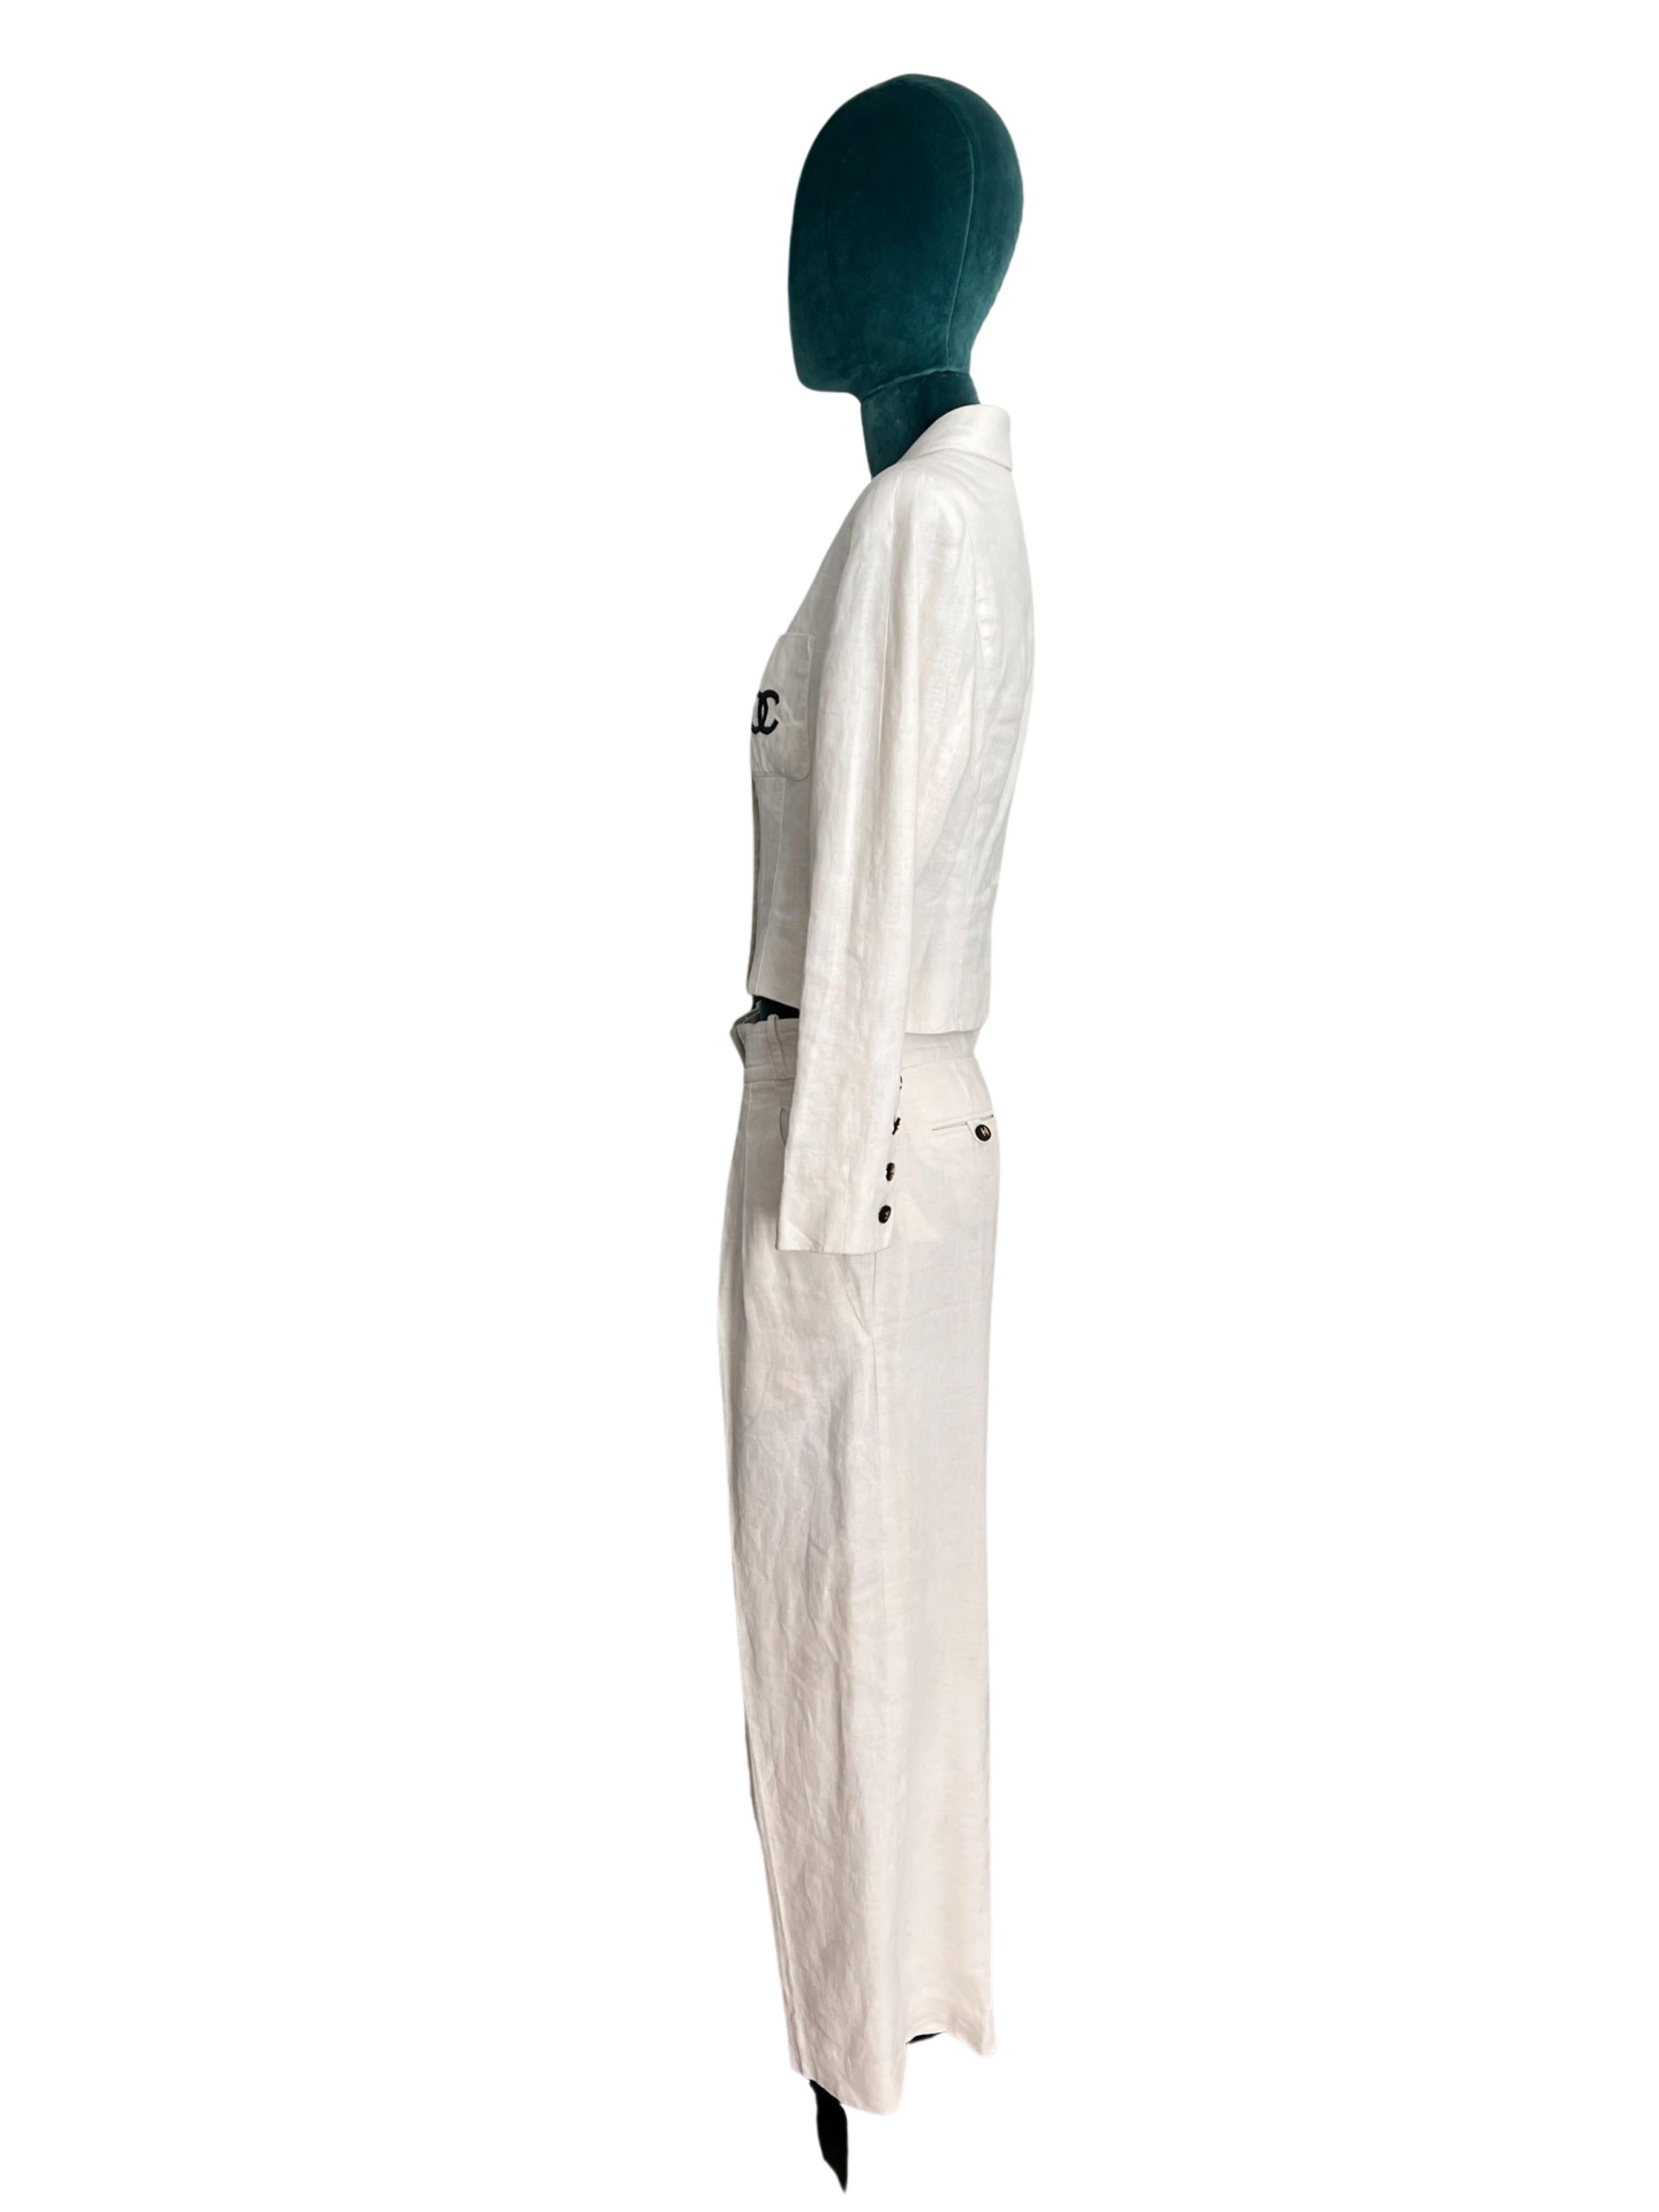 Dieser elegante, zeitlose Anzug im kultigen Chanel-Stil ist ein wahres Modejuwel. Es ist aus hochwertigem weißem Stoff gefertigt und zeugt von der Liebe zum Detail und der tadellosen Handwerkskunst der Marke. Hier ein genauerer Blick auf die